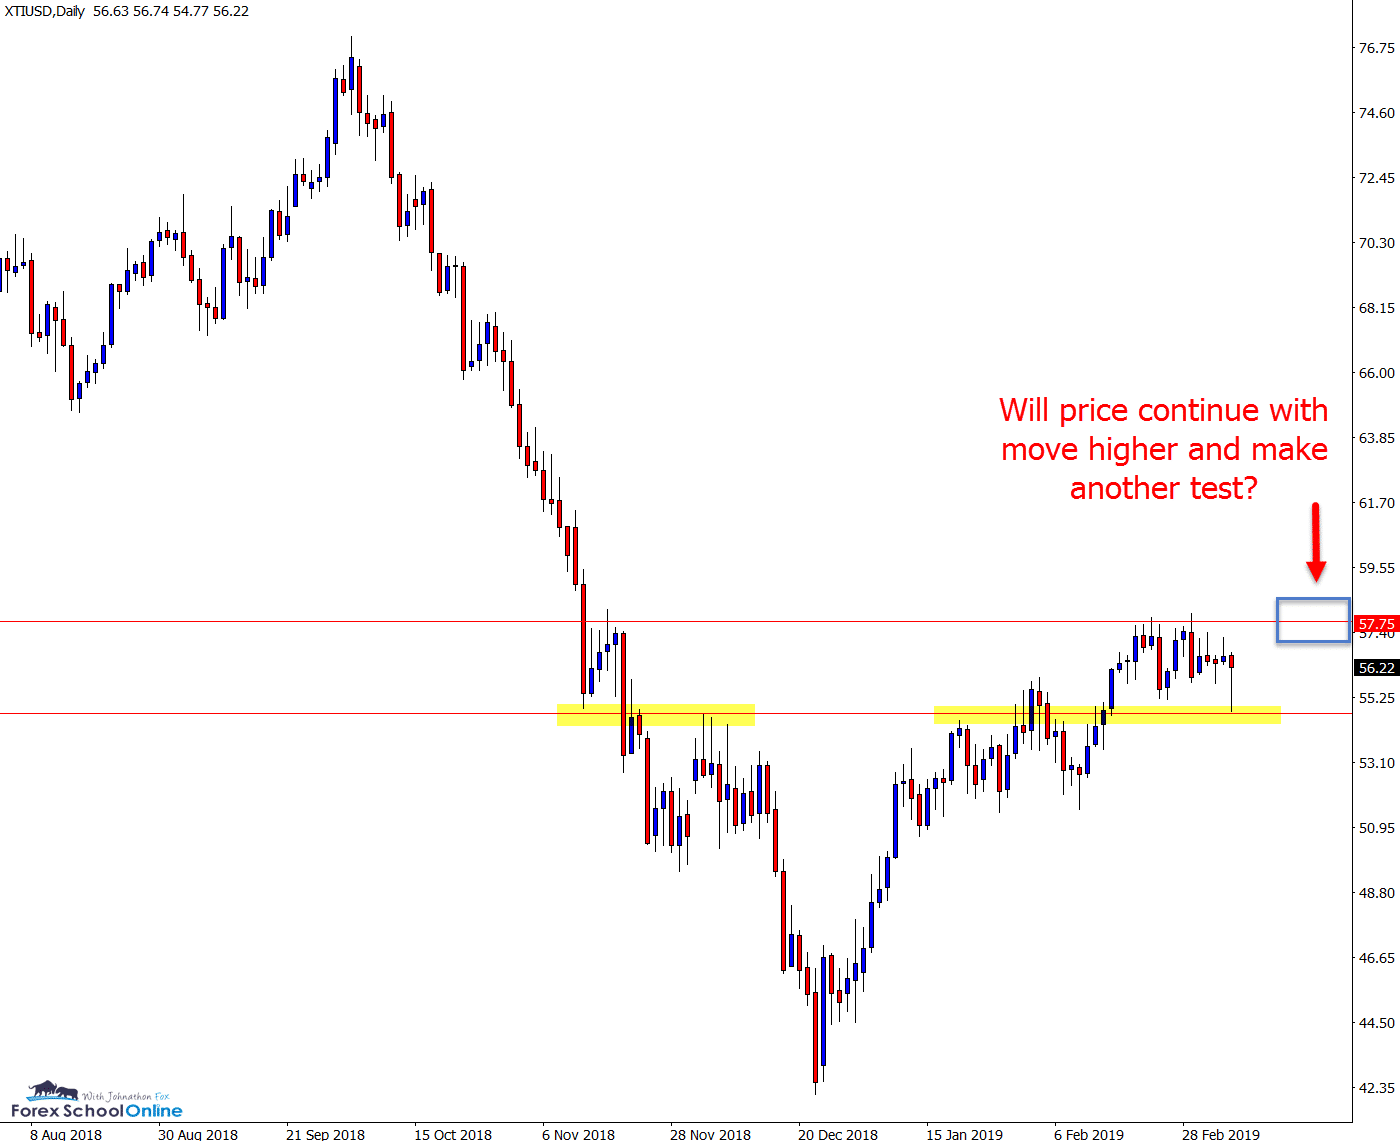 Oil v USD